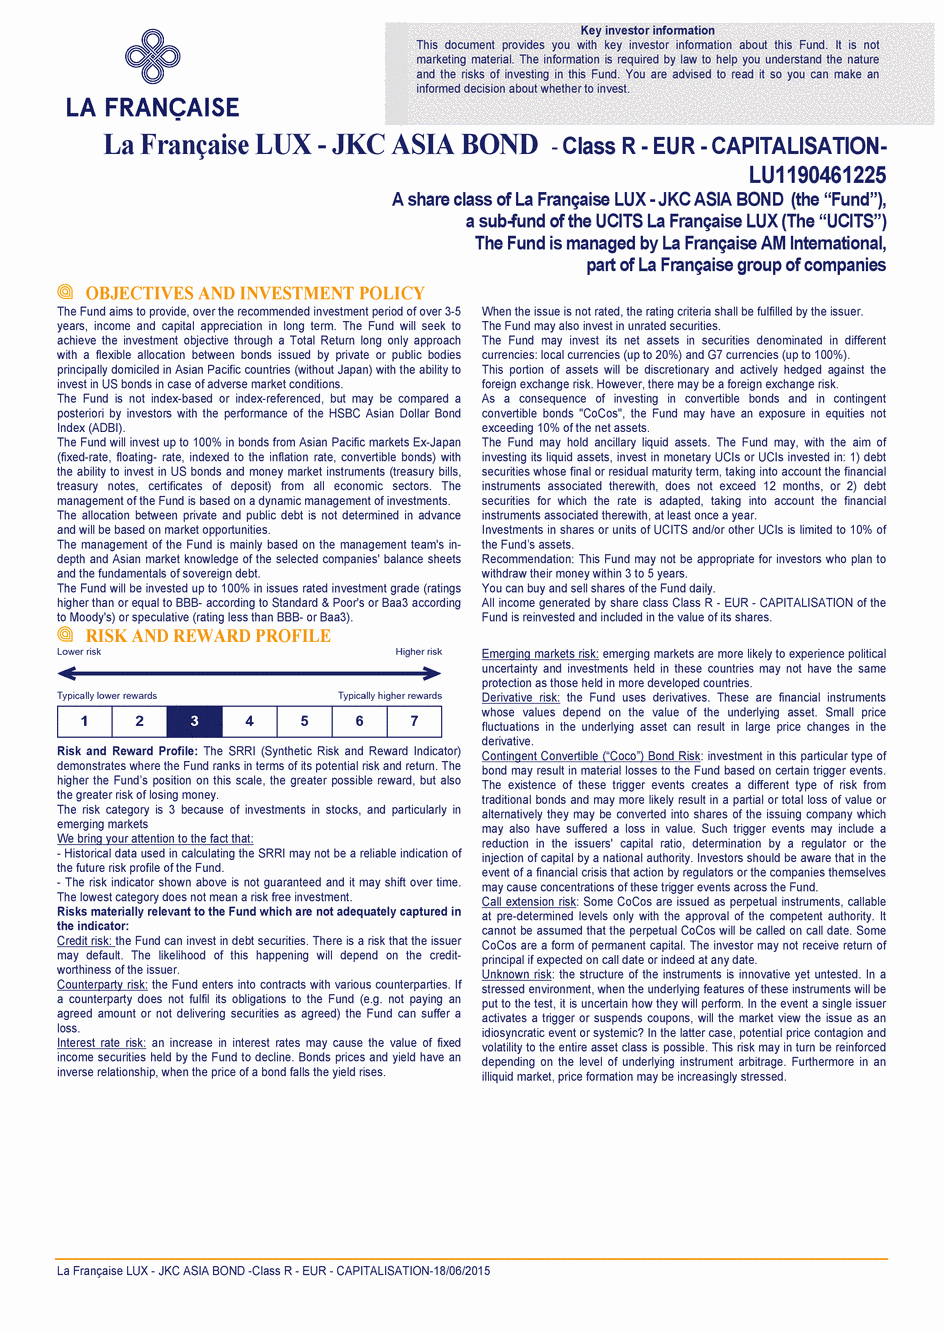 DICI La Française LUX - JKC Asia Bond - Class R (C) EUR - 18/06/2015 - Anglais